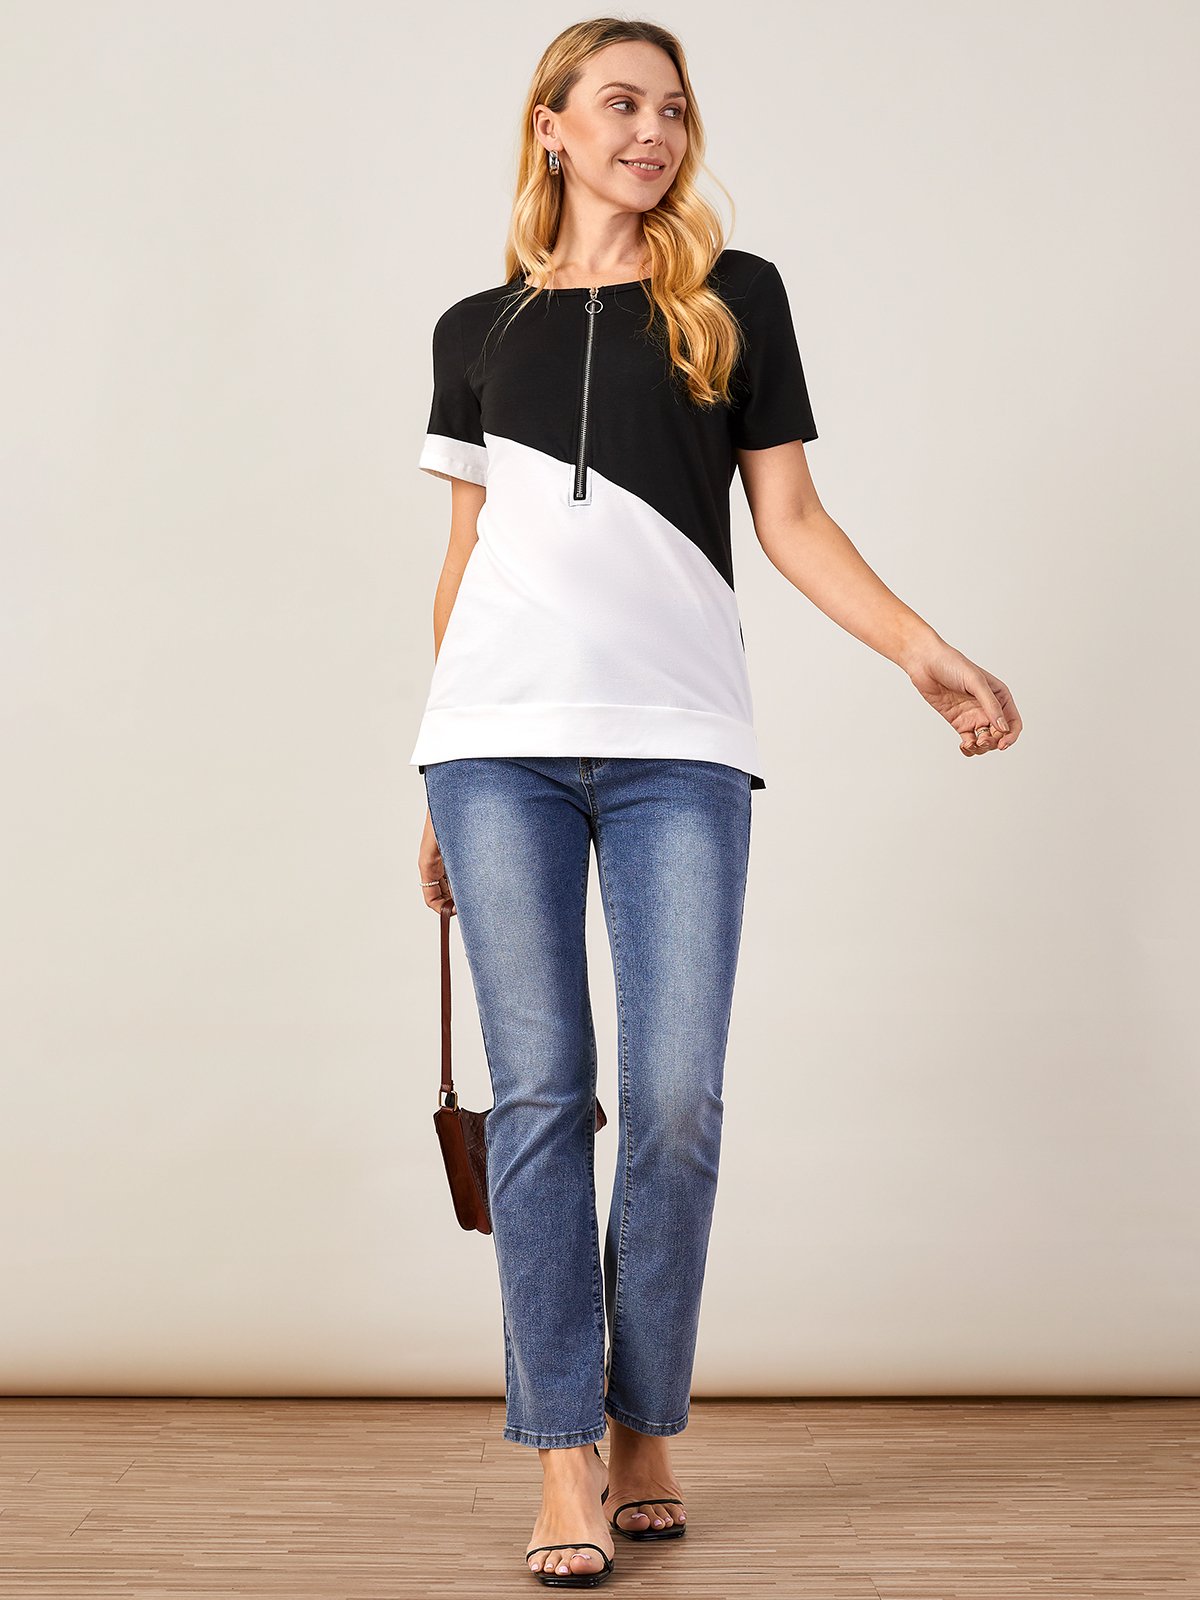 T-shirts Femmes Été Simple Contrasté Couture Micro-élasticité Manches Courtes Ample Droit Régulier Dakota du Sud